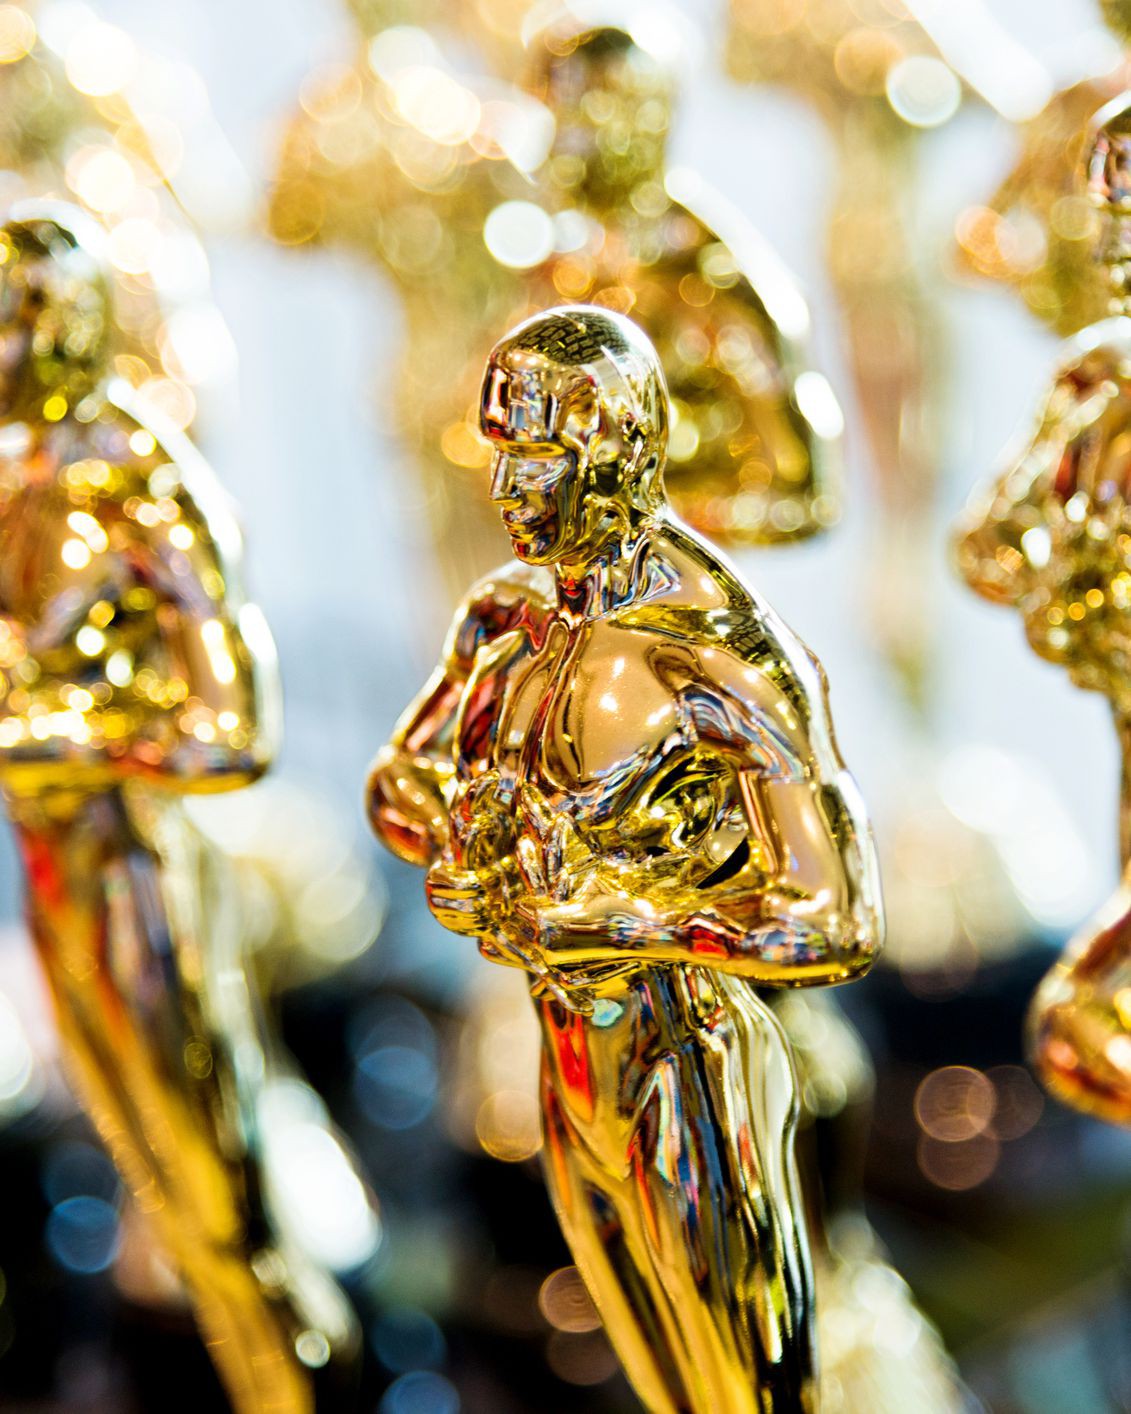 Dám cá bạn sẽ sốc khi biết được mức giá thu được khi bán một bức tượng vàng Oscar - Ảnh 1.